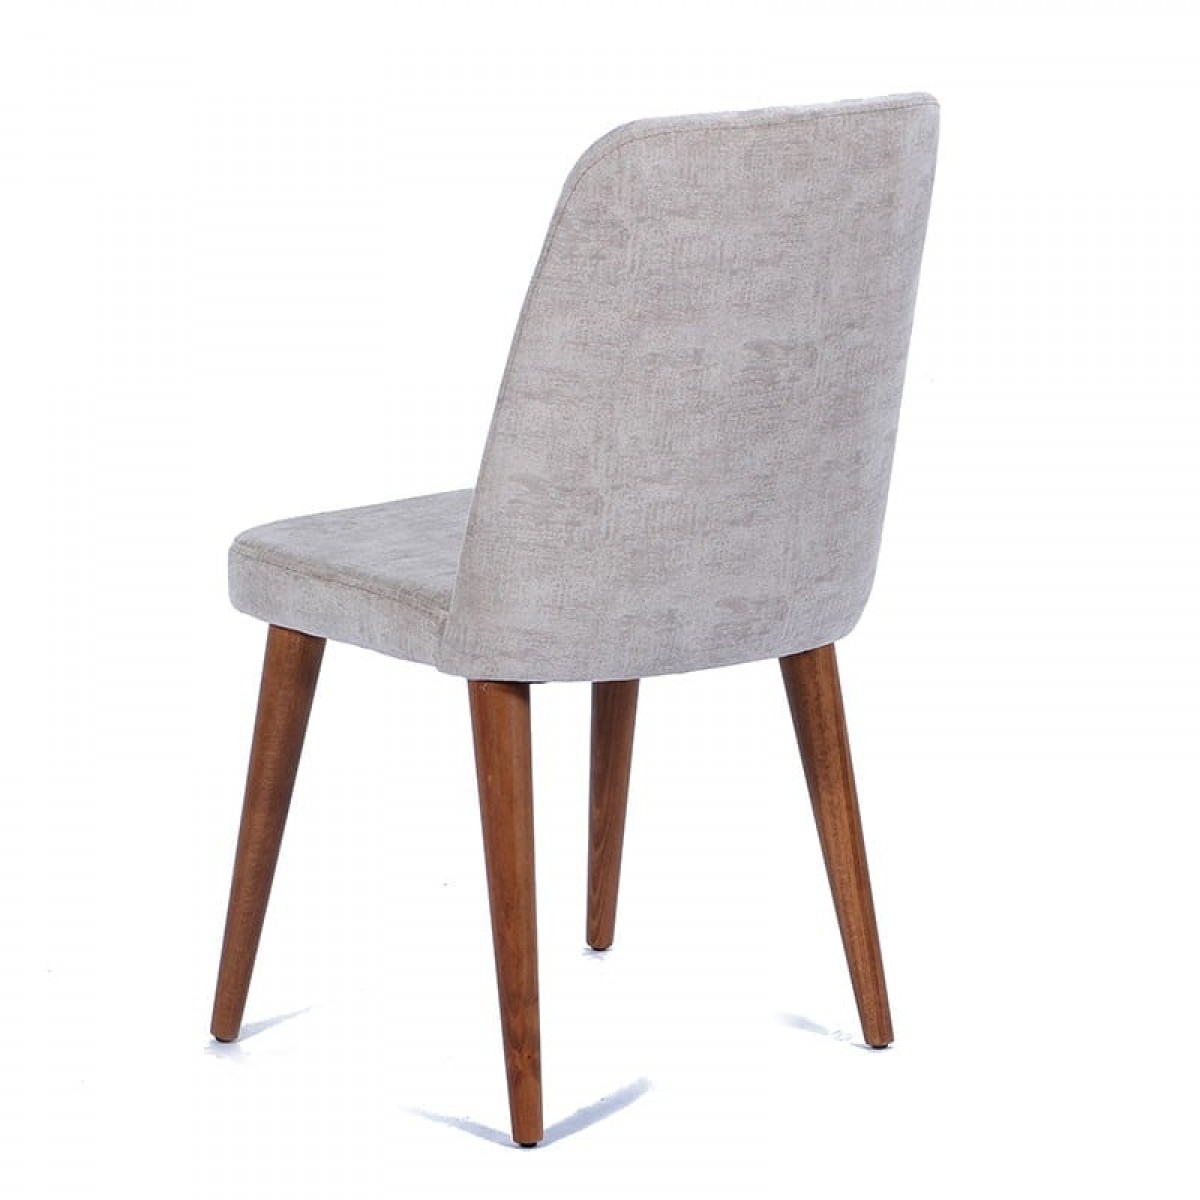 Καρέκλα milano με υφασμάτινη επένδυση γκρι με ξύλινα πόδια σε καφέ χρώμα 45x50x90 εκ